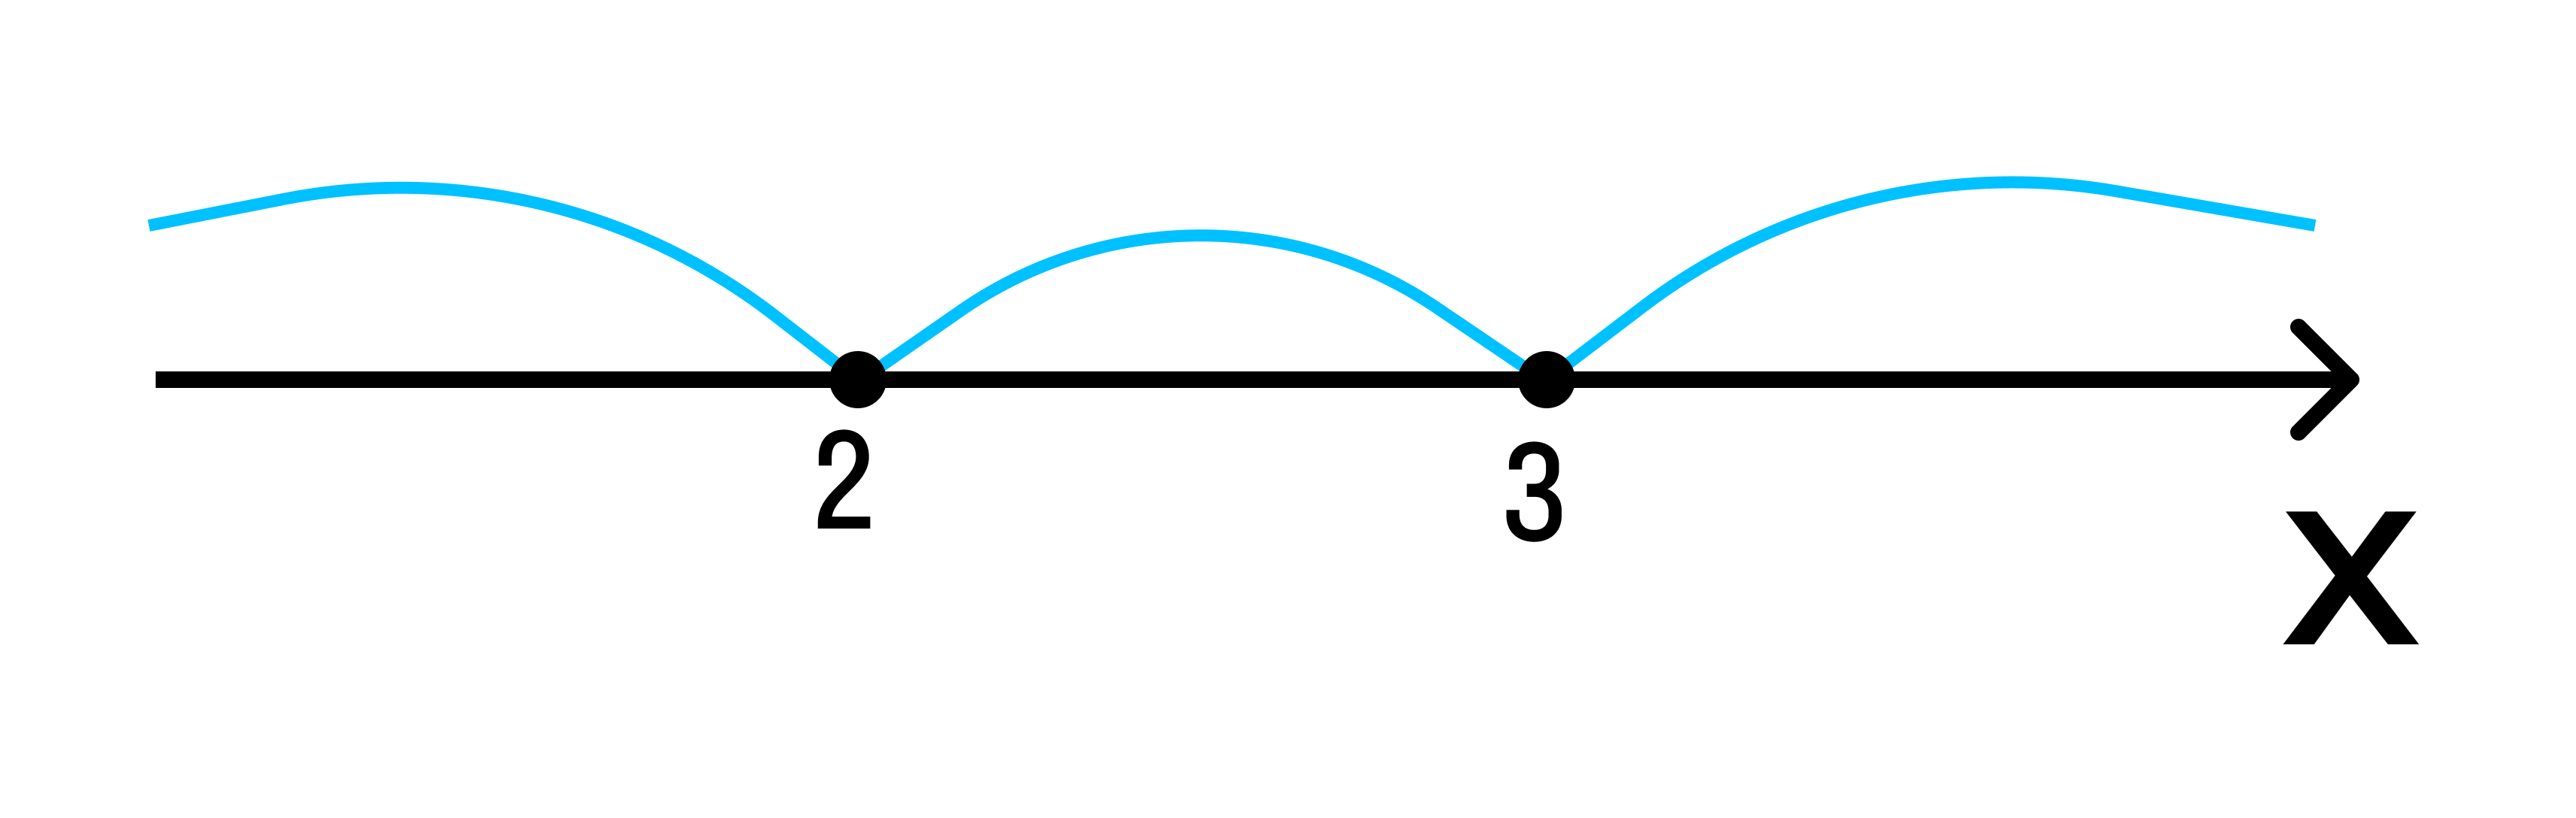 Метод интервалов, пример 1, рисунок 1